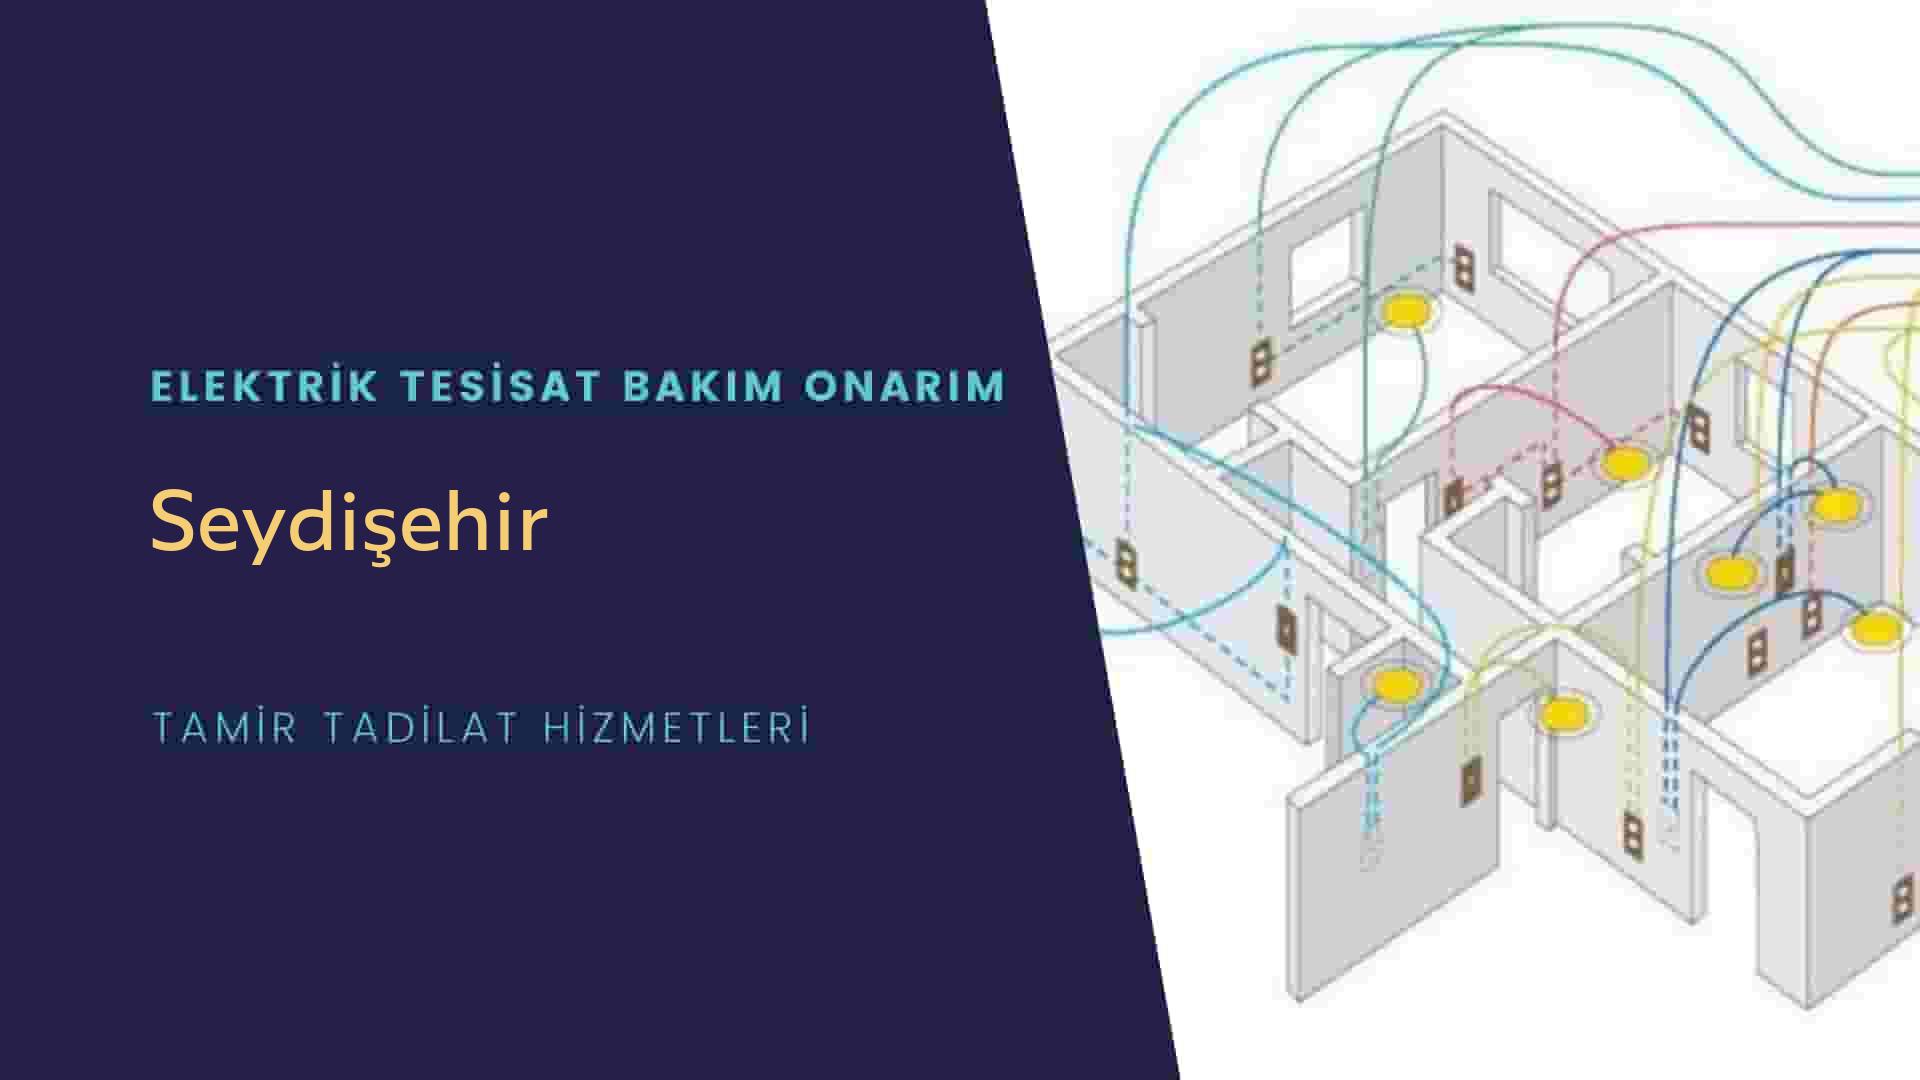 Seydişehir'de elektrik tesisatı ustalarımı arıyorsunuz doğru adrestenizi Seydişehir elektrik tesisatı ustalarımız 7/24 sizlere hizmet vermekten mutluluk duyar.